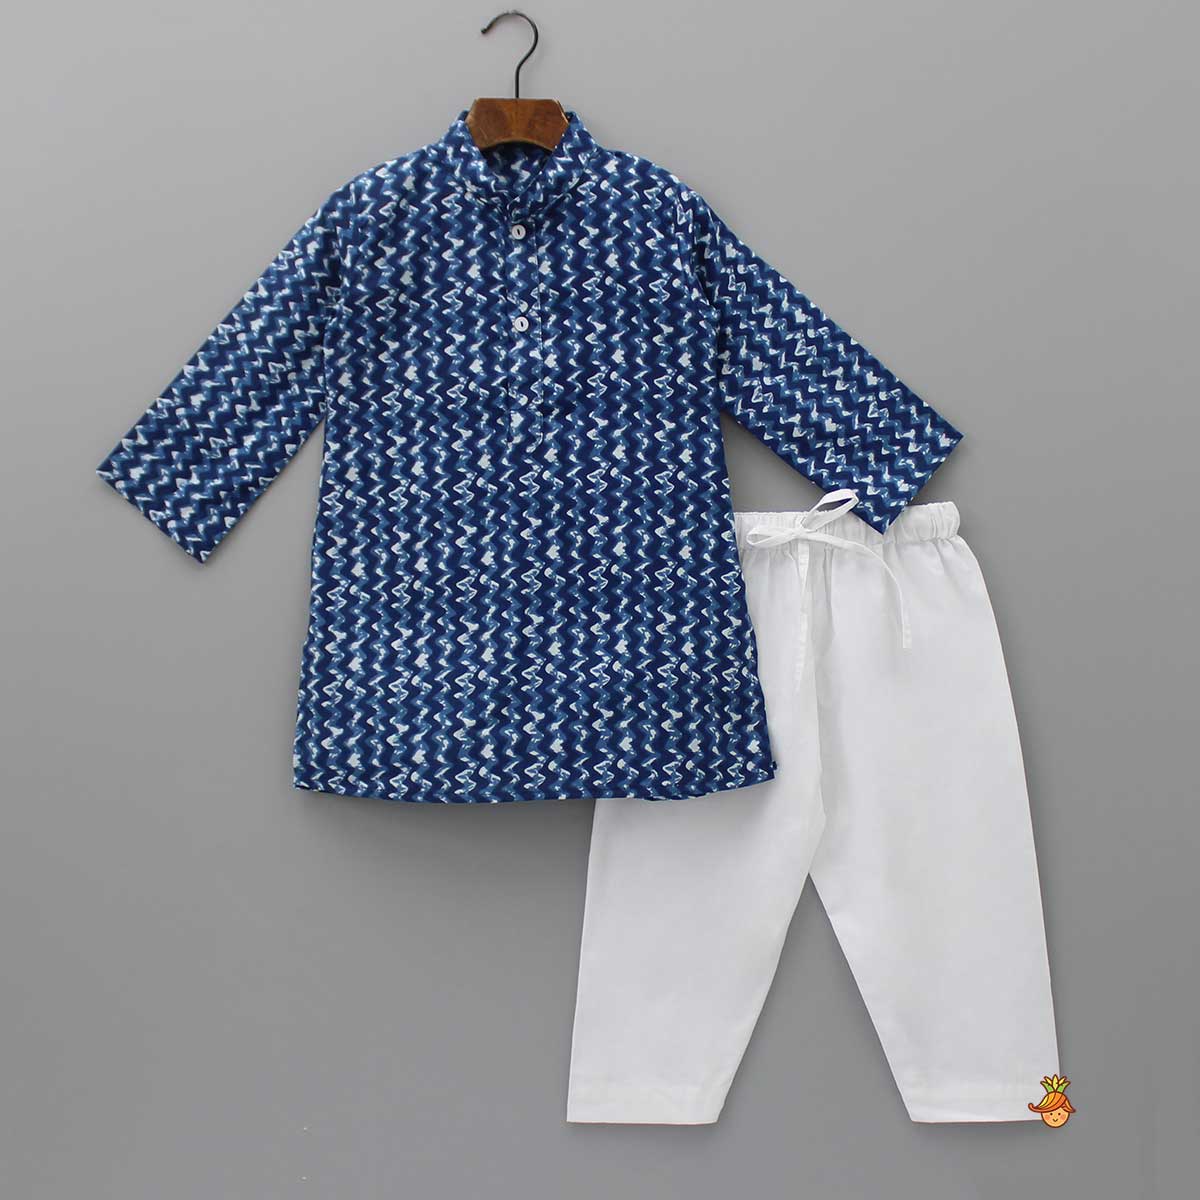 Chevron Printed Cotton Kurta And Jacket With Pyjama